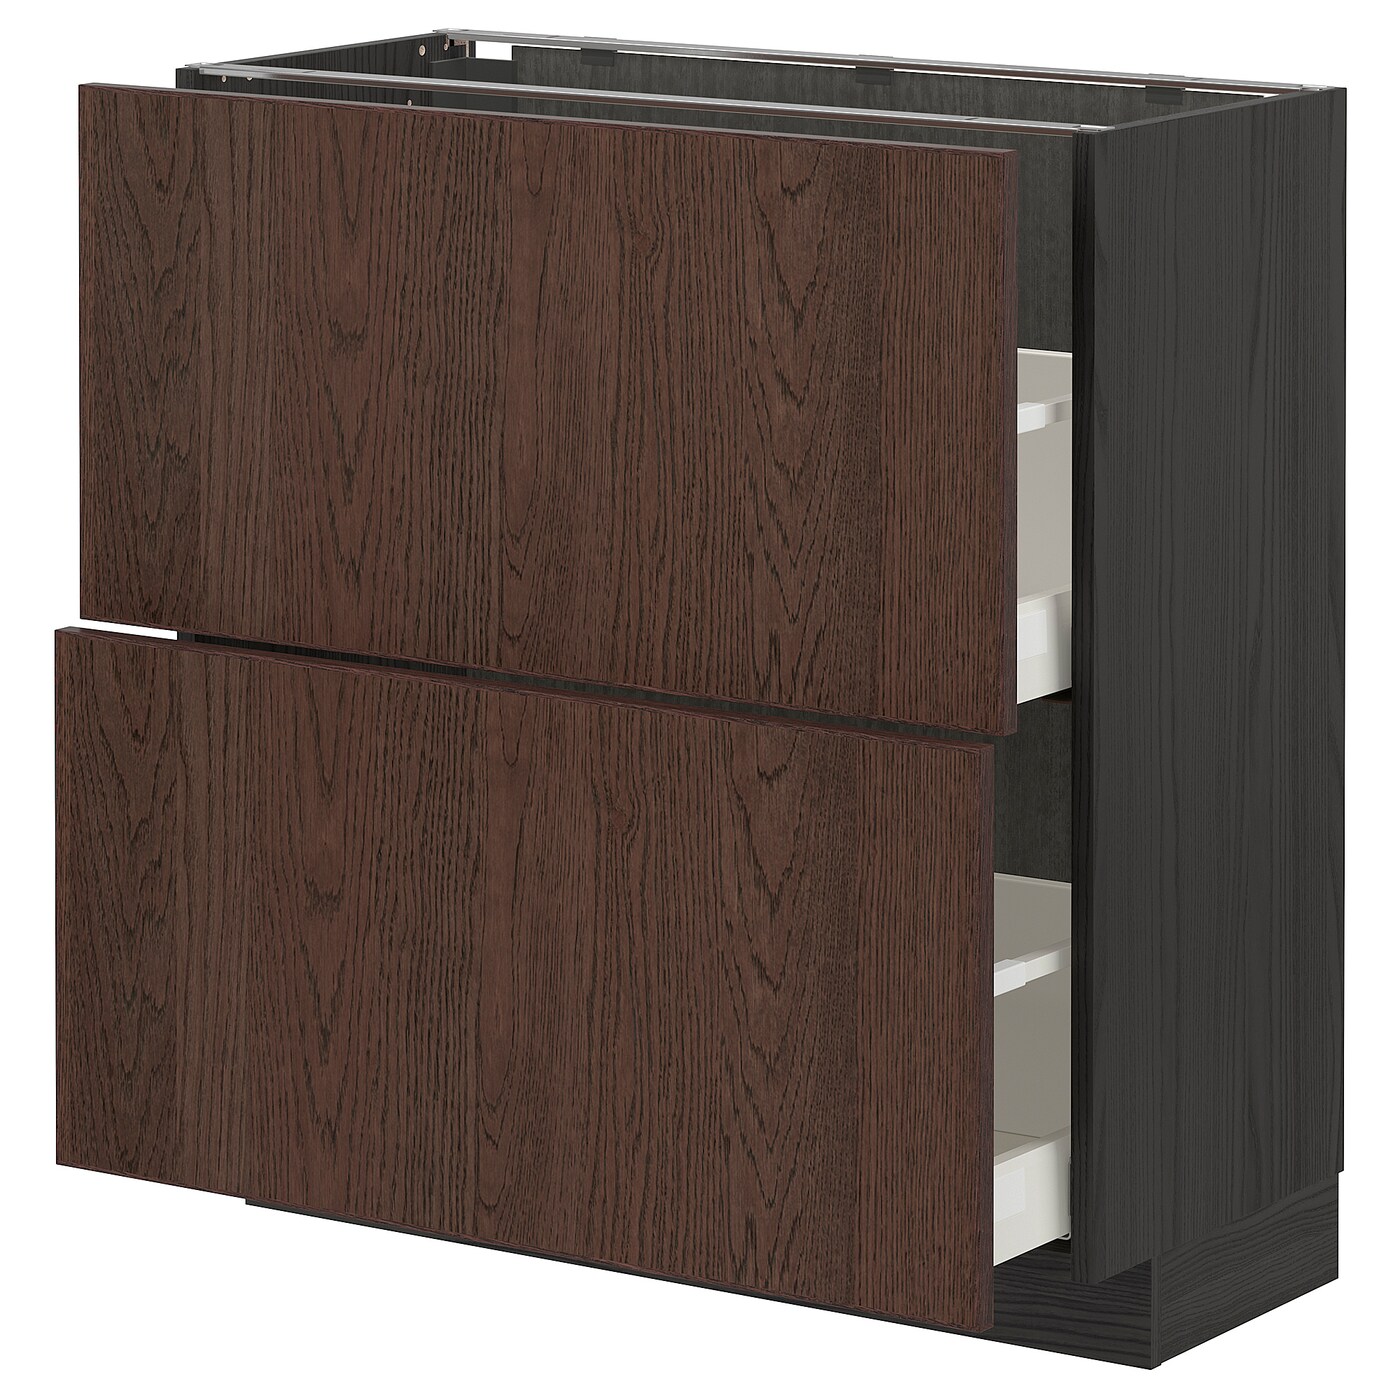 Напольный шкаф - IKEA METOD MAXIMERA, 88x39x80см, черный/темно-коричневый, МЕТОД МАКСИМЕРА ИКЕА